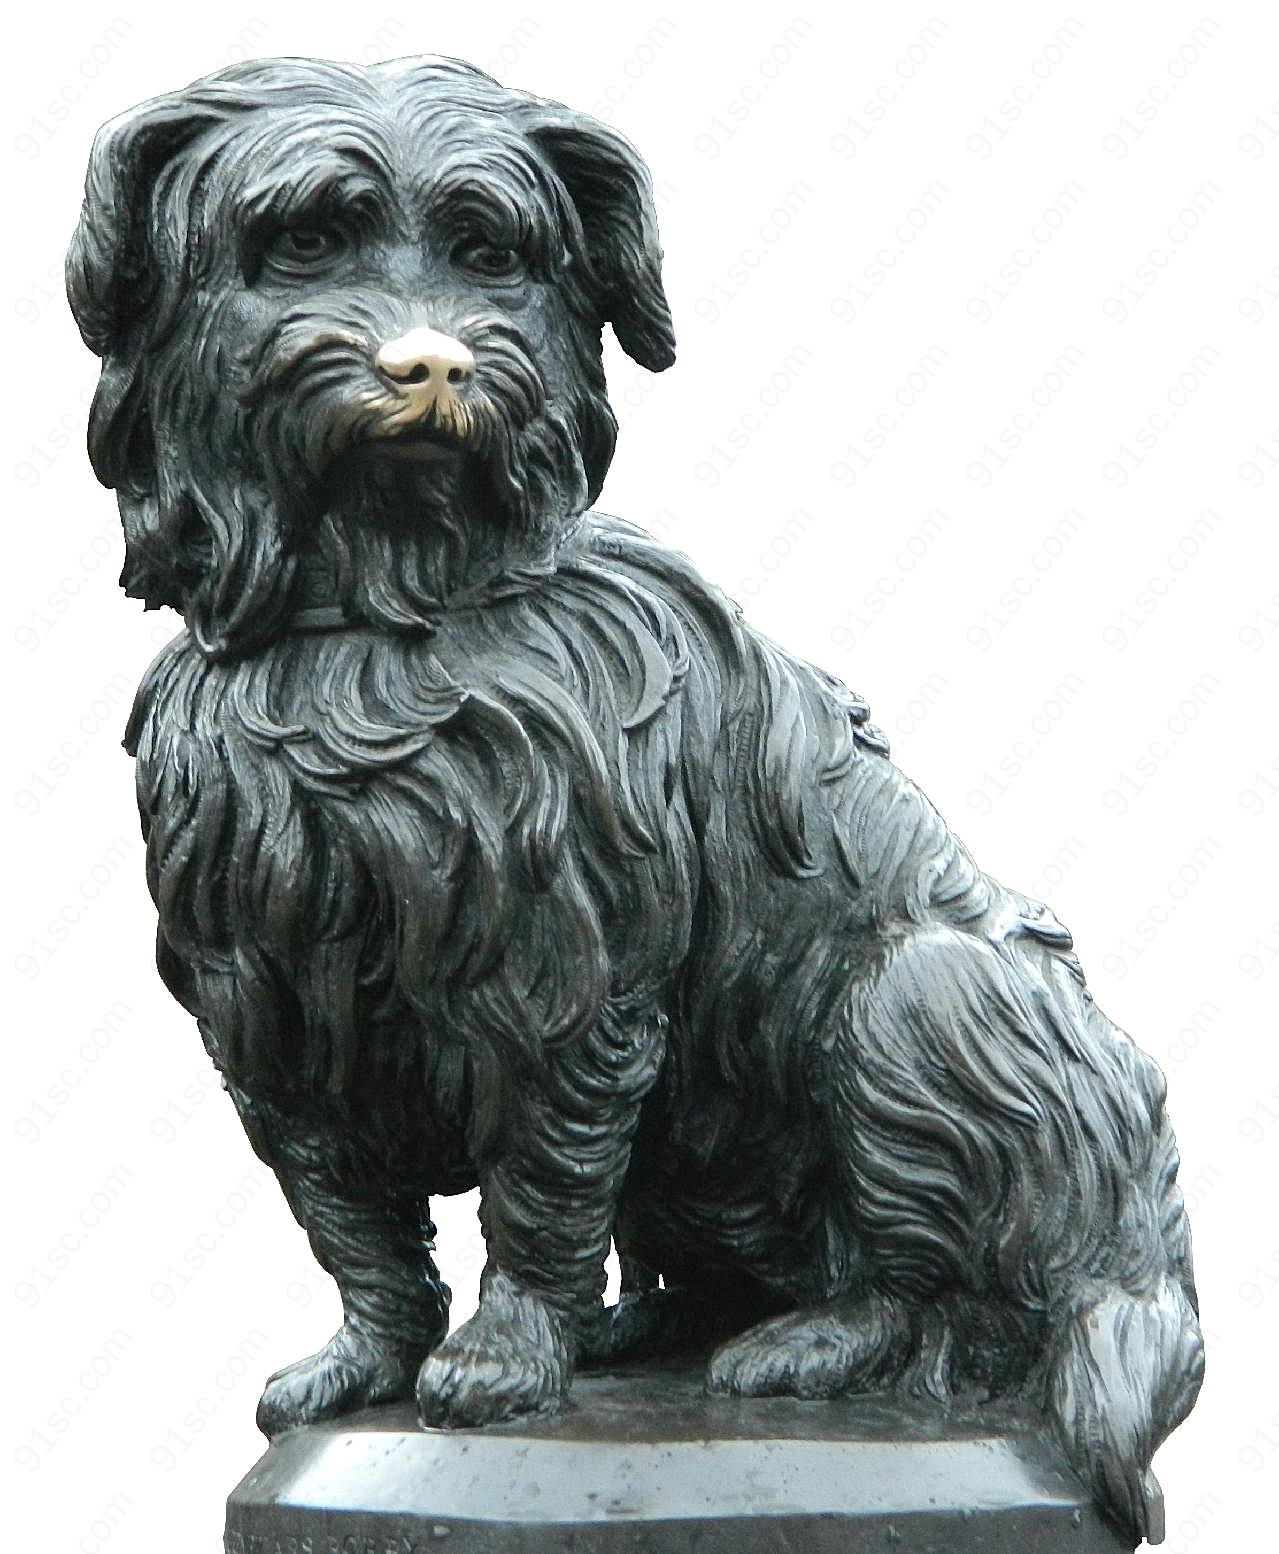 忠犬铜像图片民族工艺品